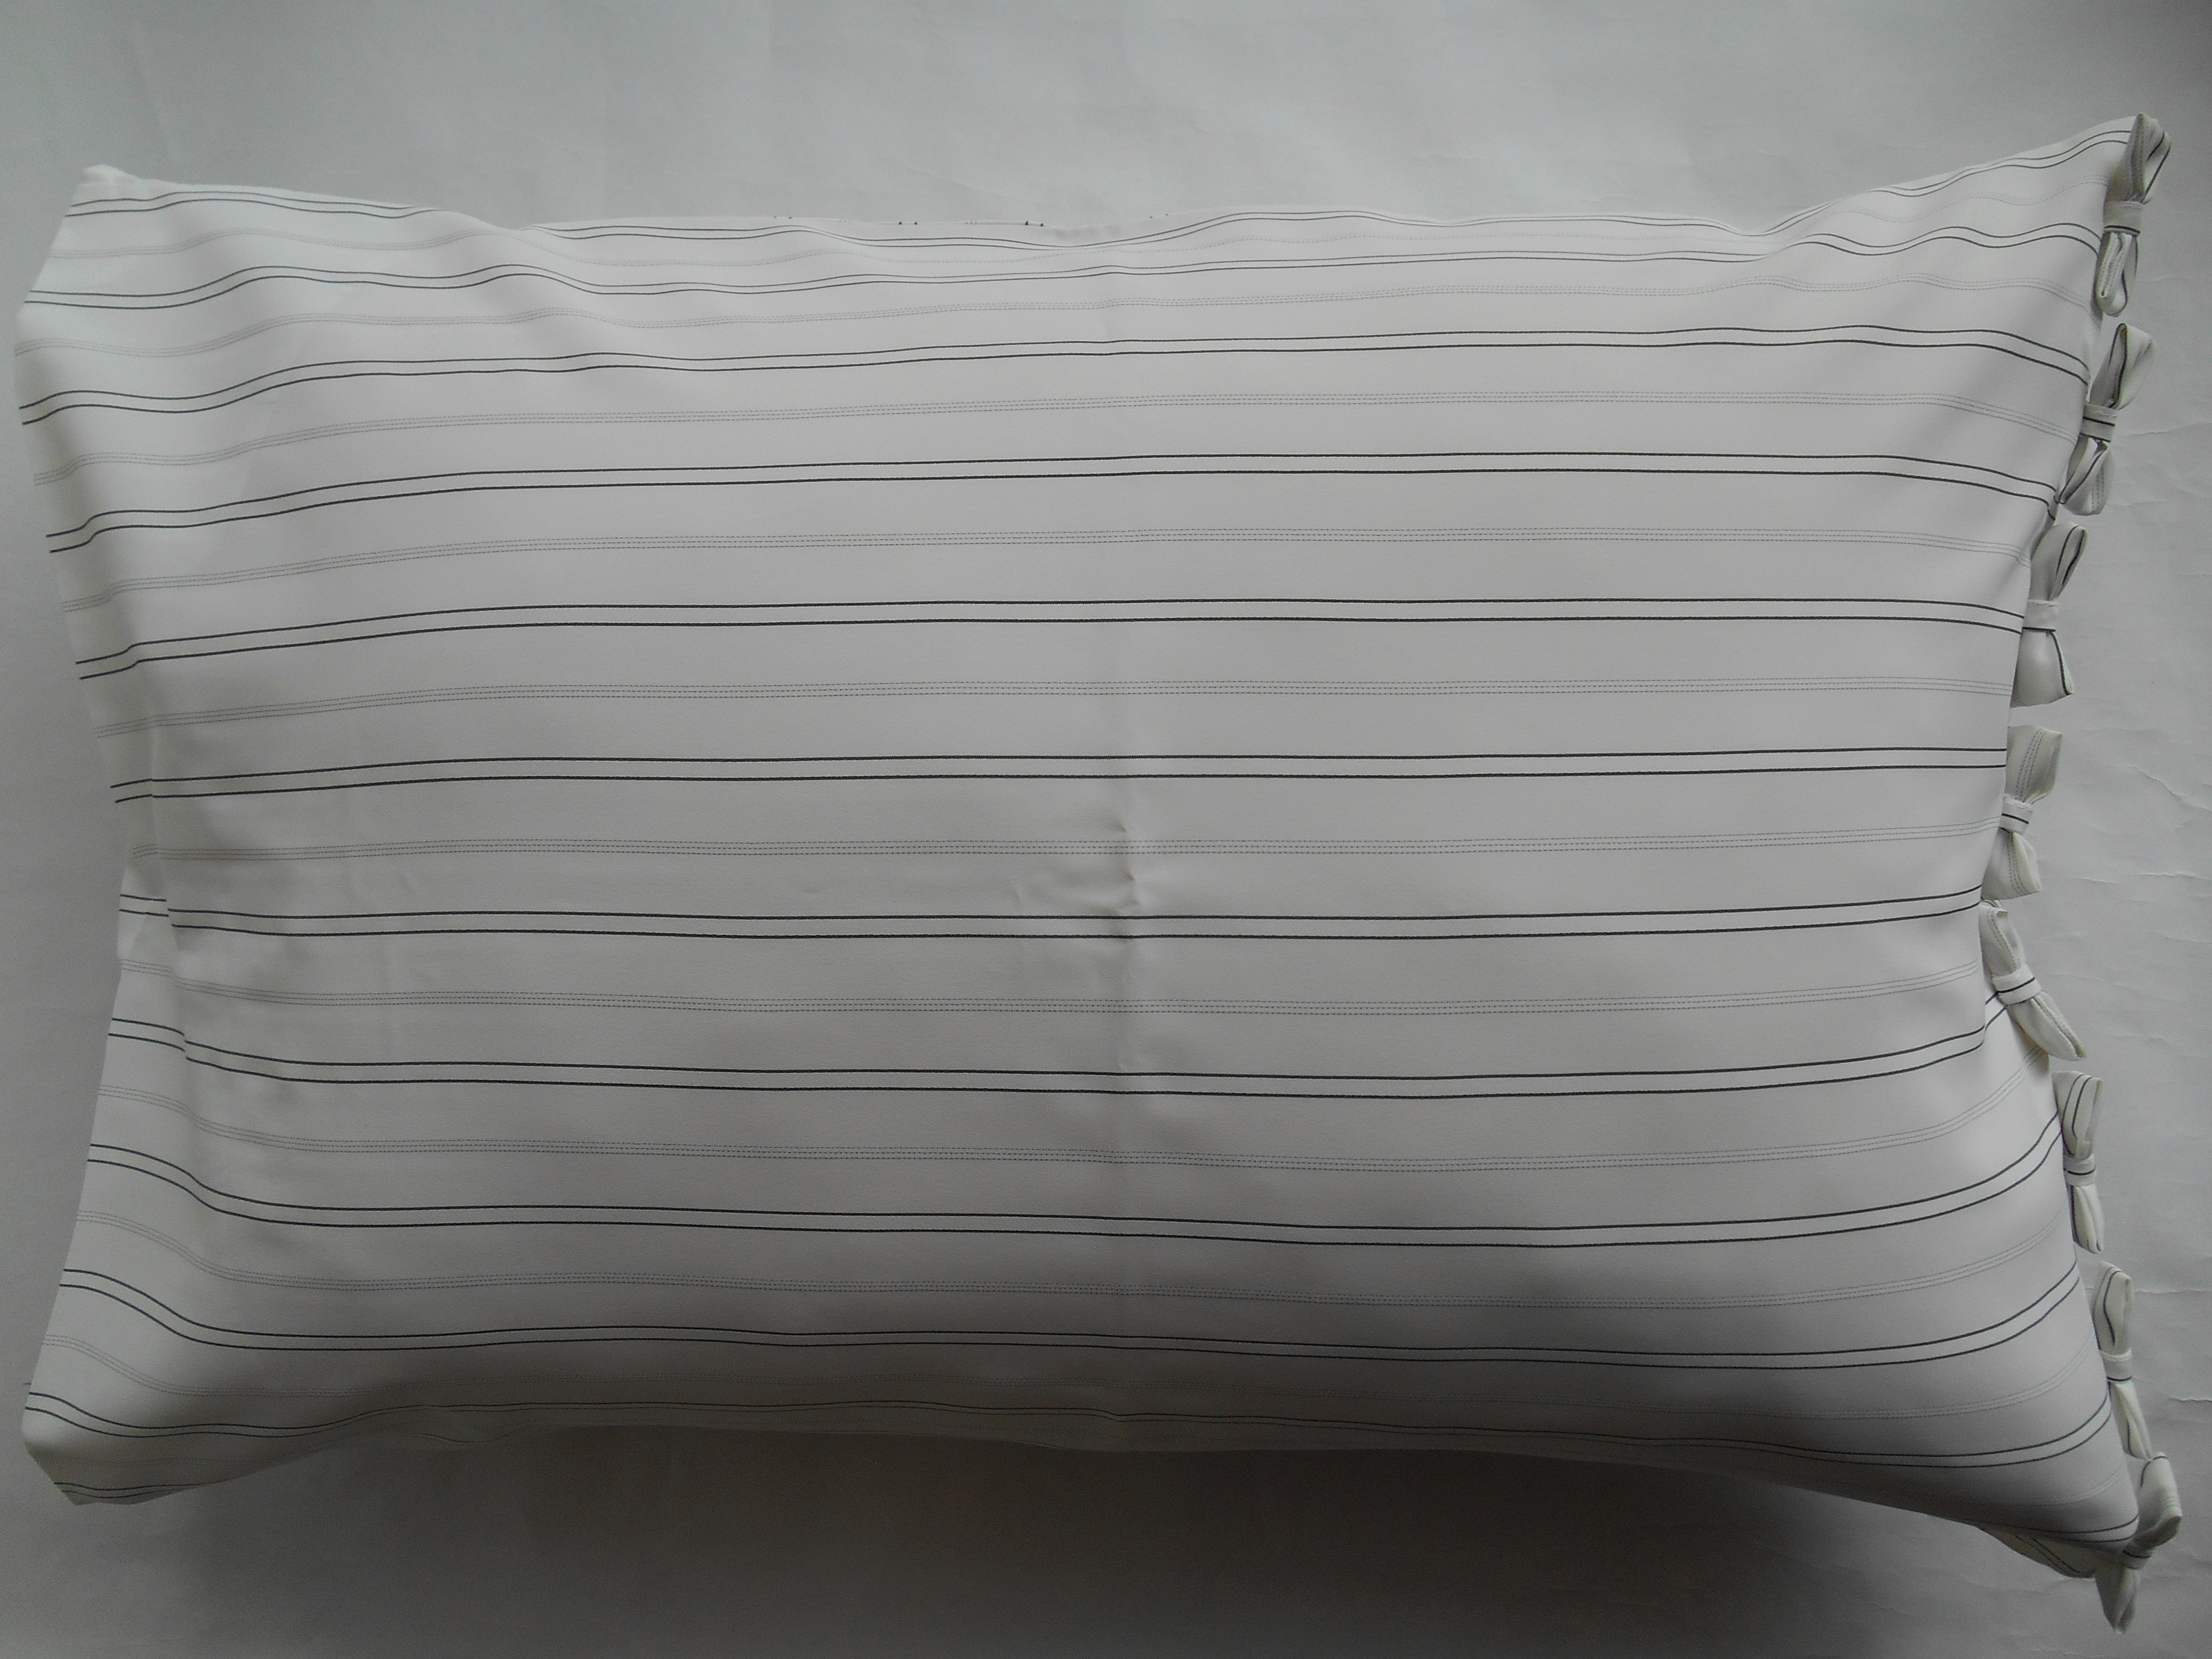 オフ ストライプリボン付きかわいい枕カバー Iichi ハンドメイド クラフト作品 手仕事品の通販